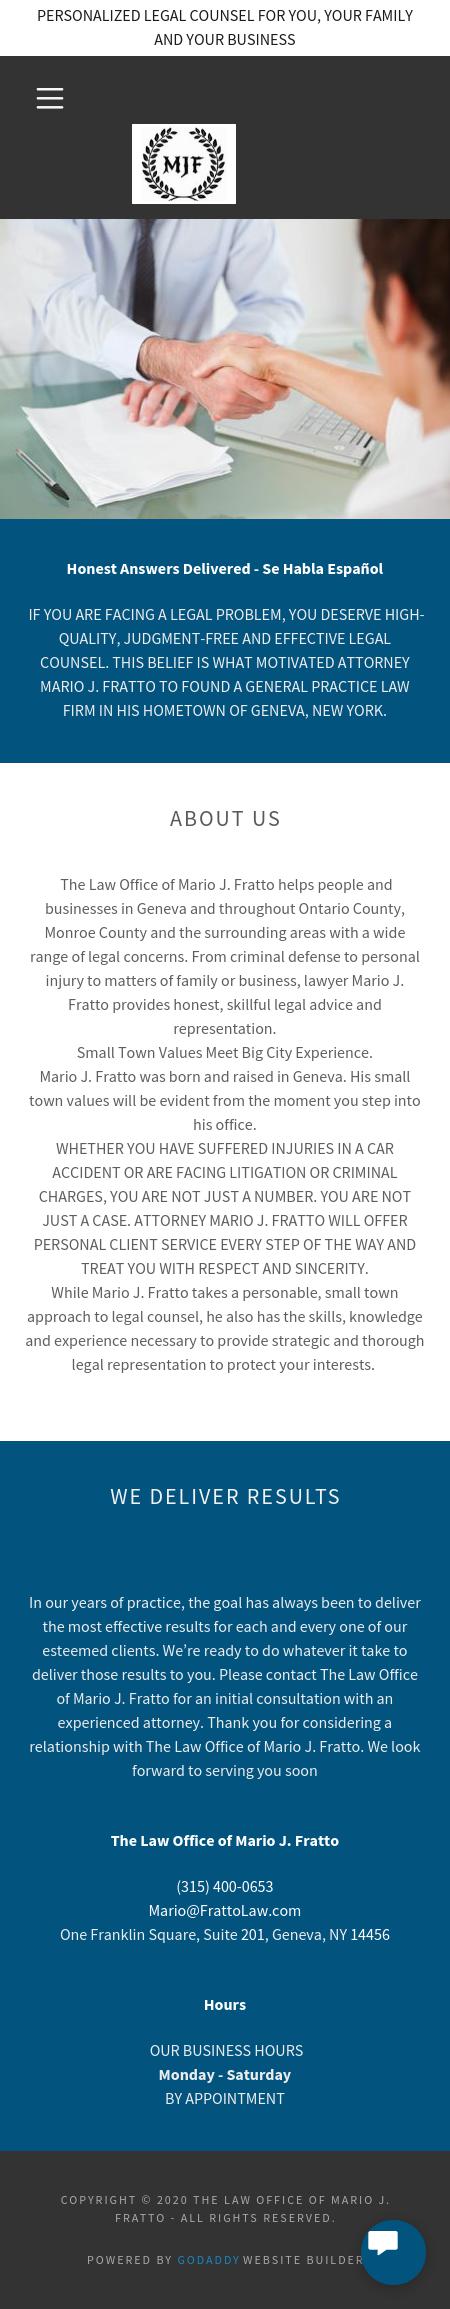 The Law Office of Mario J. Fratto - Geneva NY Lawyers